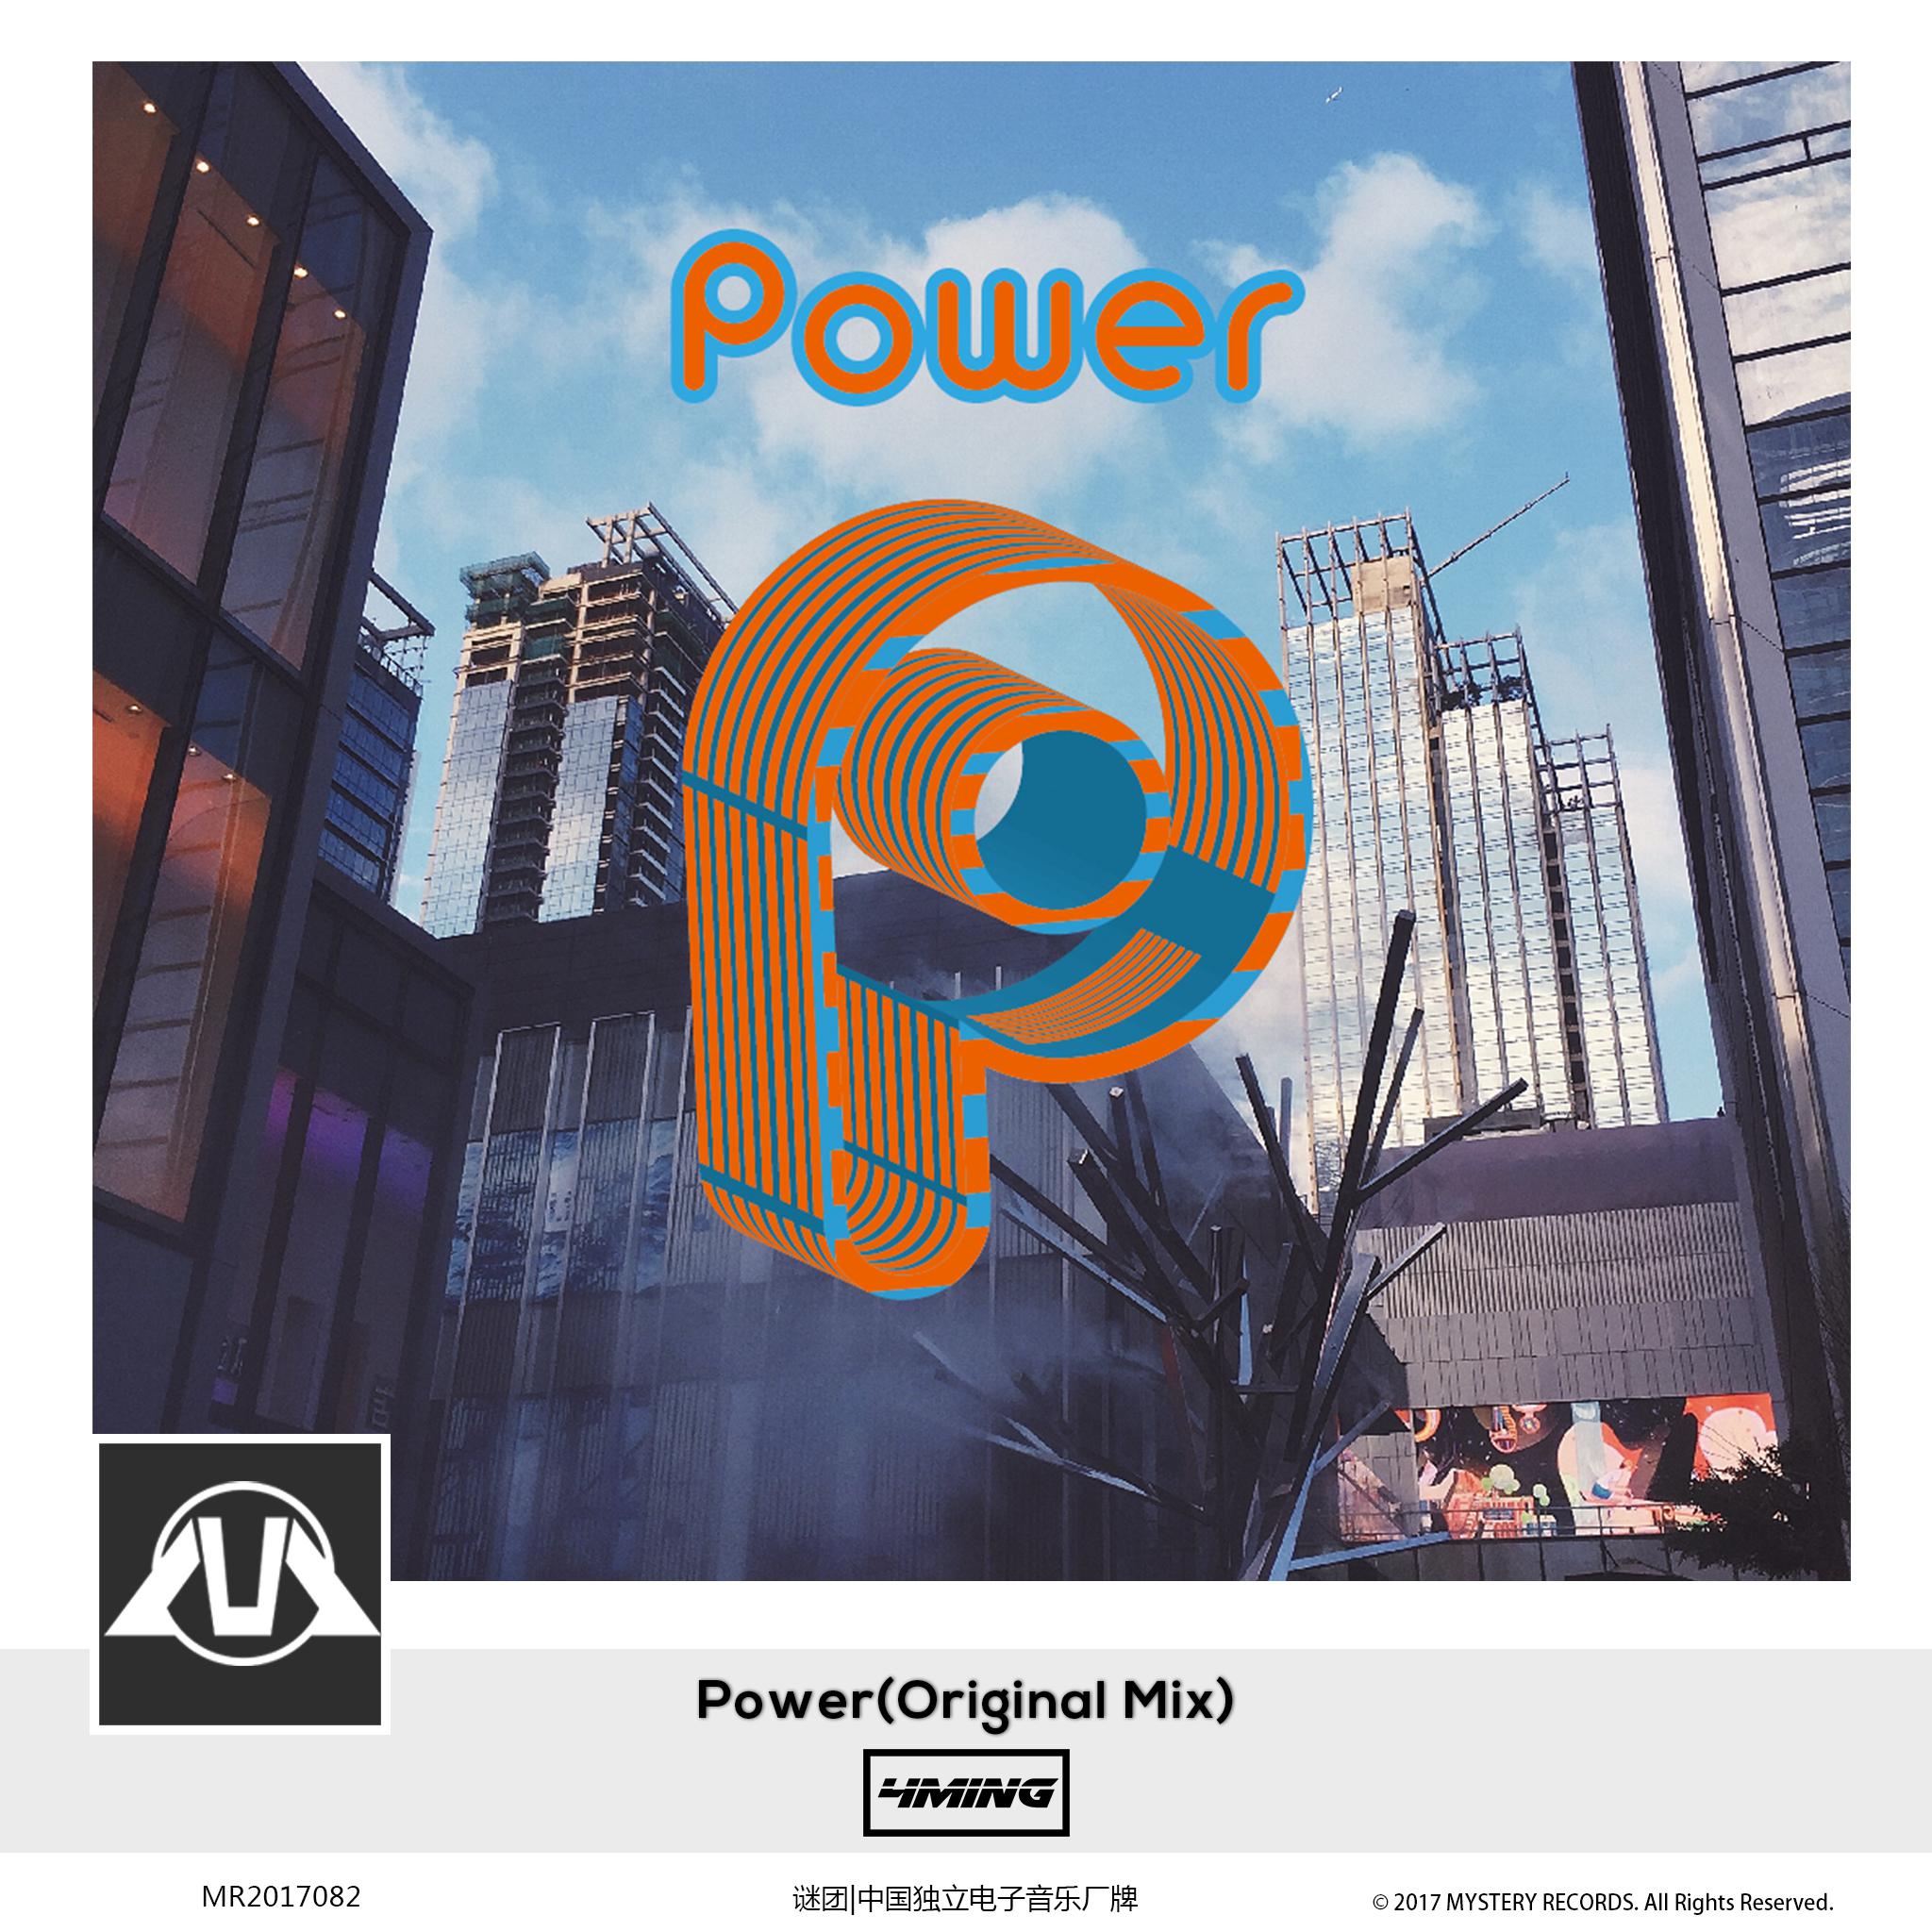 Power Original Mix 4ming 单曲 网易云音乐